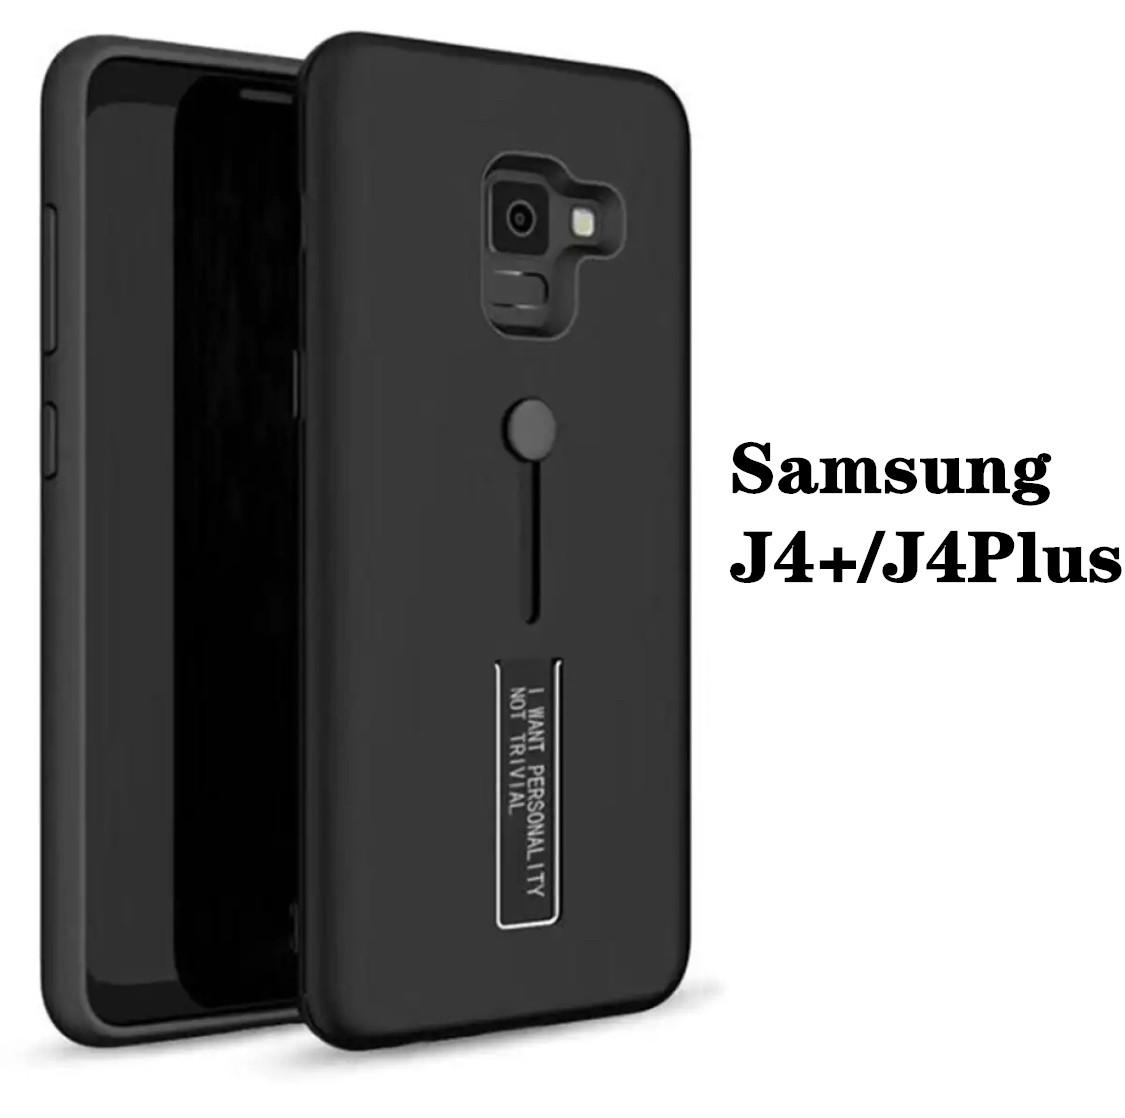 [รับประกันสินค้า] Case Samsung Galaxy J4 Plus / J4+ เคสซัมซุง J4พลัส เคสปุ่มเลื่อน สายคล้องนิ้ว เคสหุ่นยนต์ สำหรับ เคส Samsung J4plus เคสมือถือ เคสโทรศัพท์ [Armor] Lanyard ขาตั้ง กันกระแทก Man Hard แบบใหม่